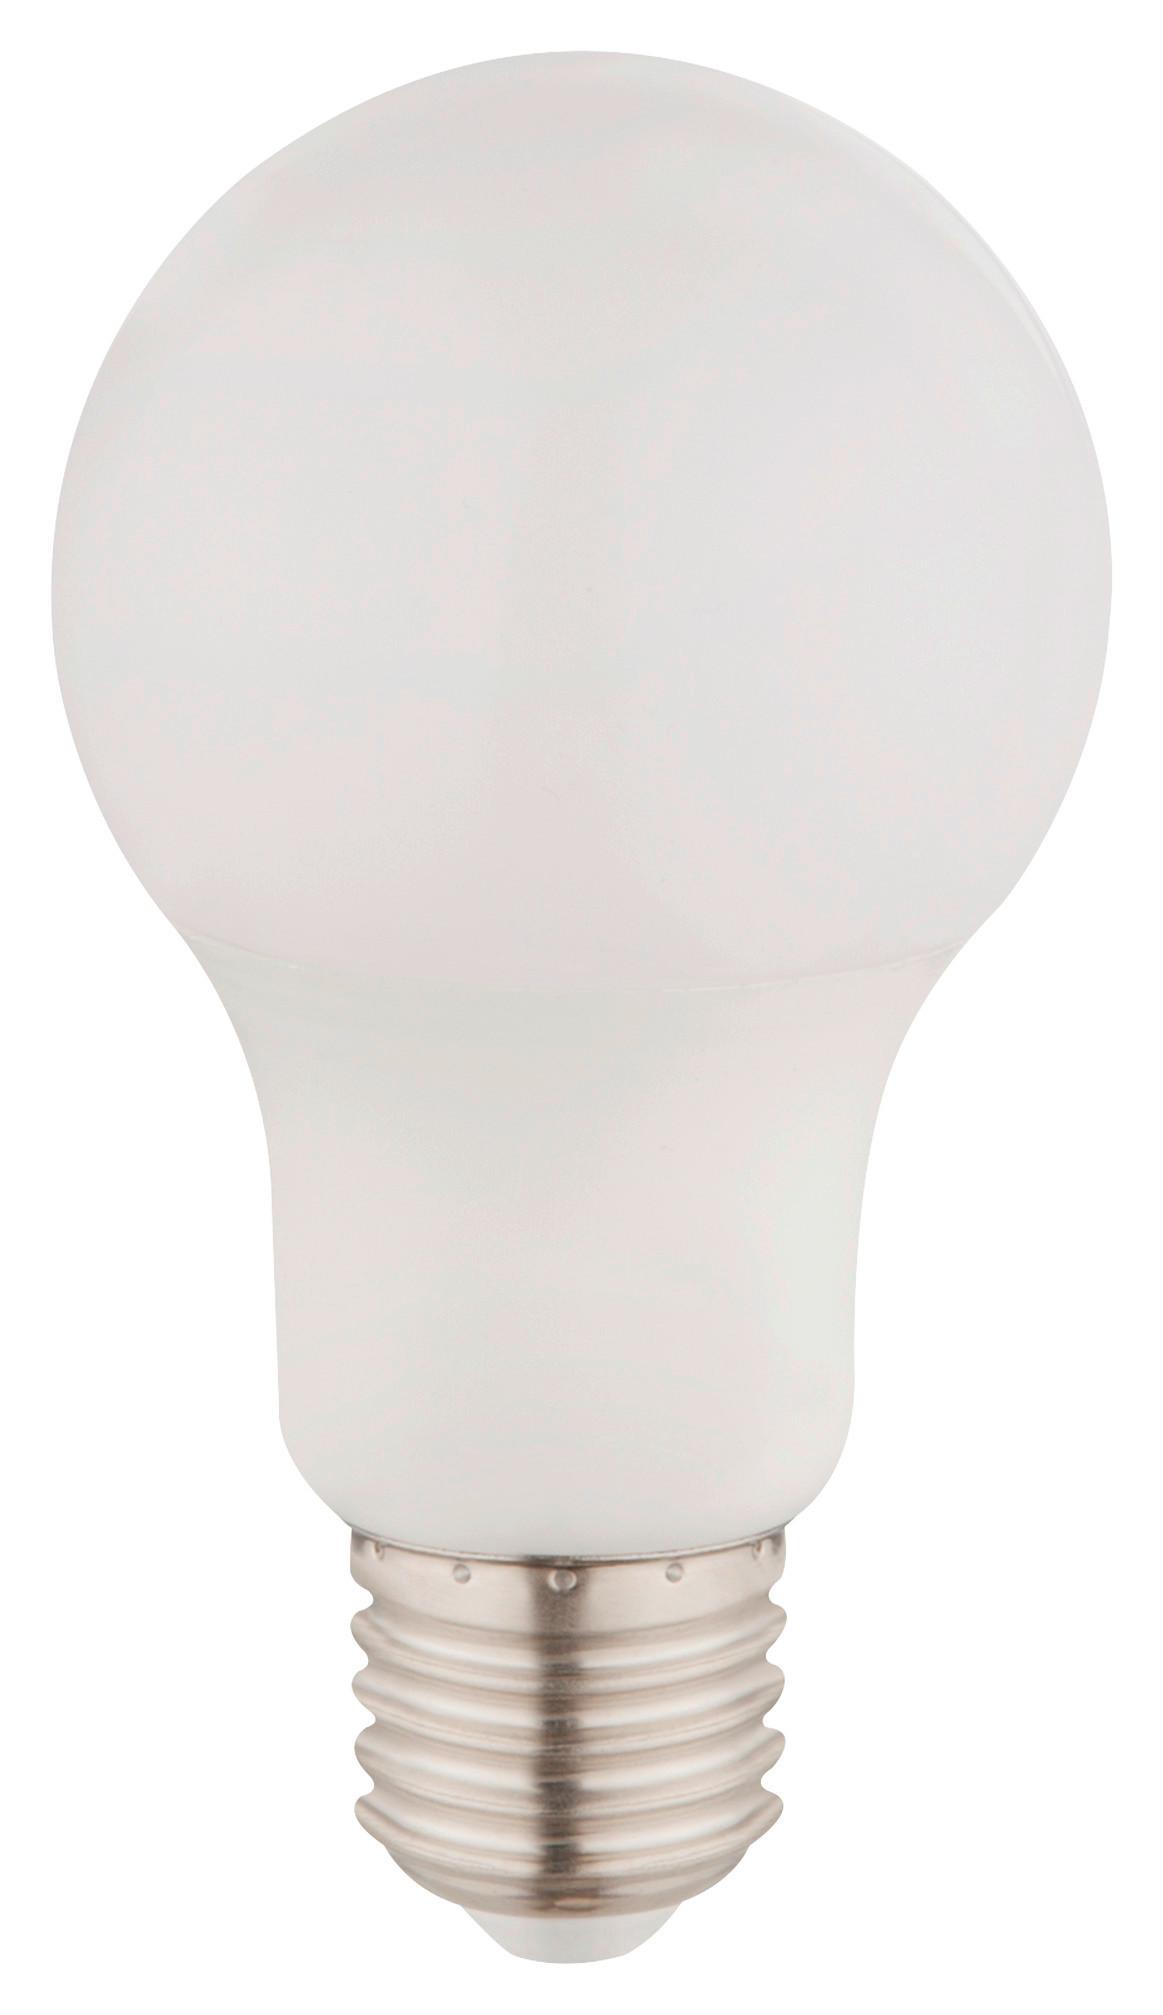 LED-Leuchtmittel 810 lm, E27, - Opal, MODERN, Kunststoff/Metall (6/11cm)